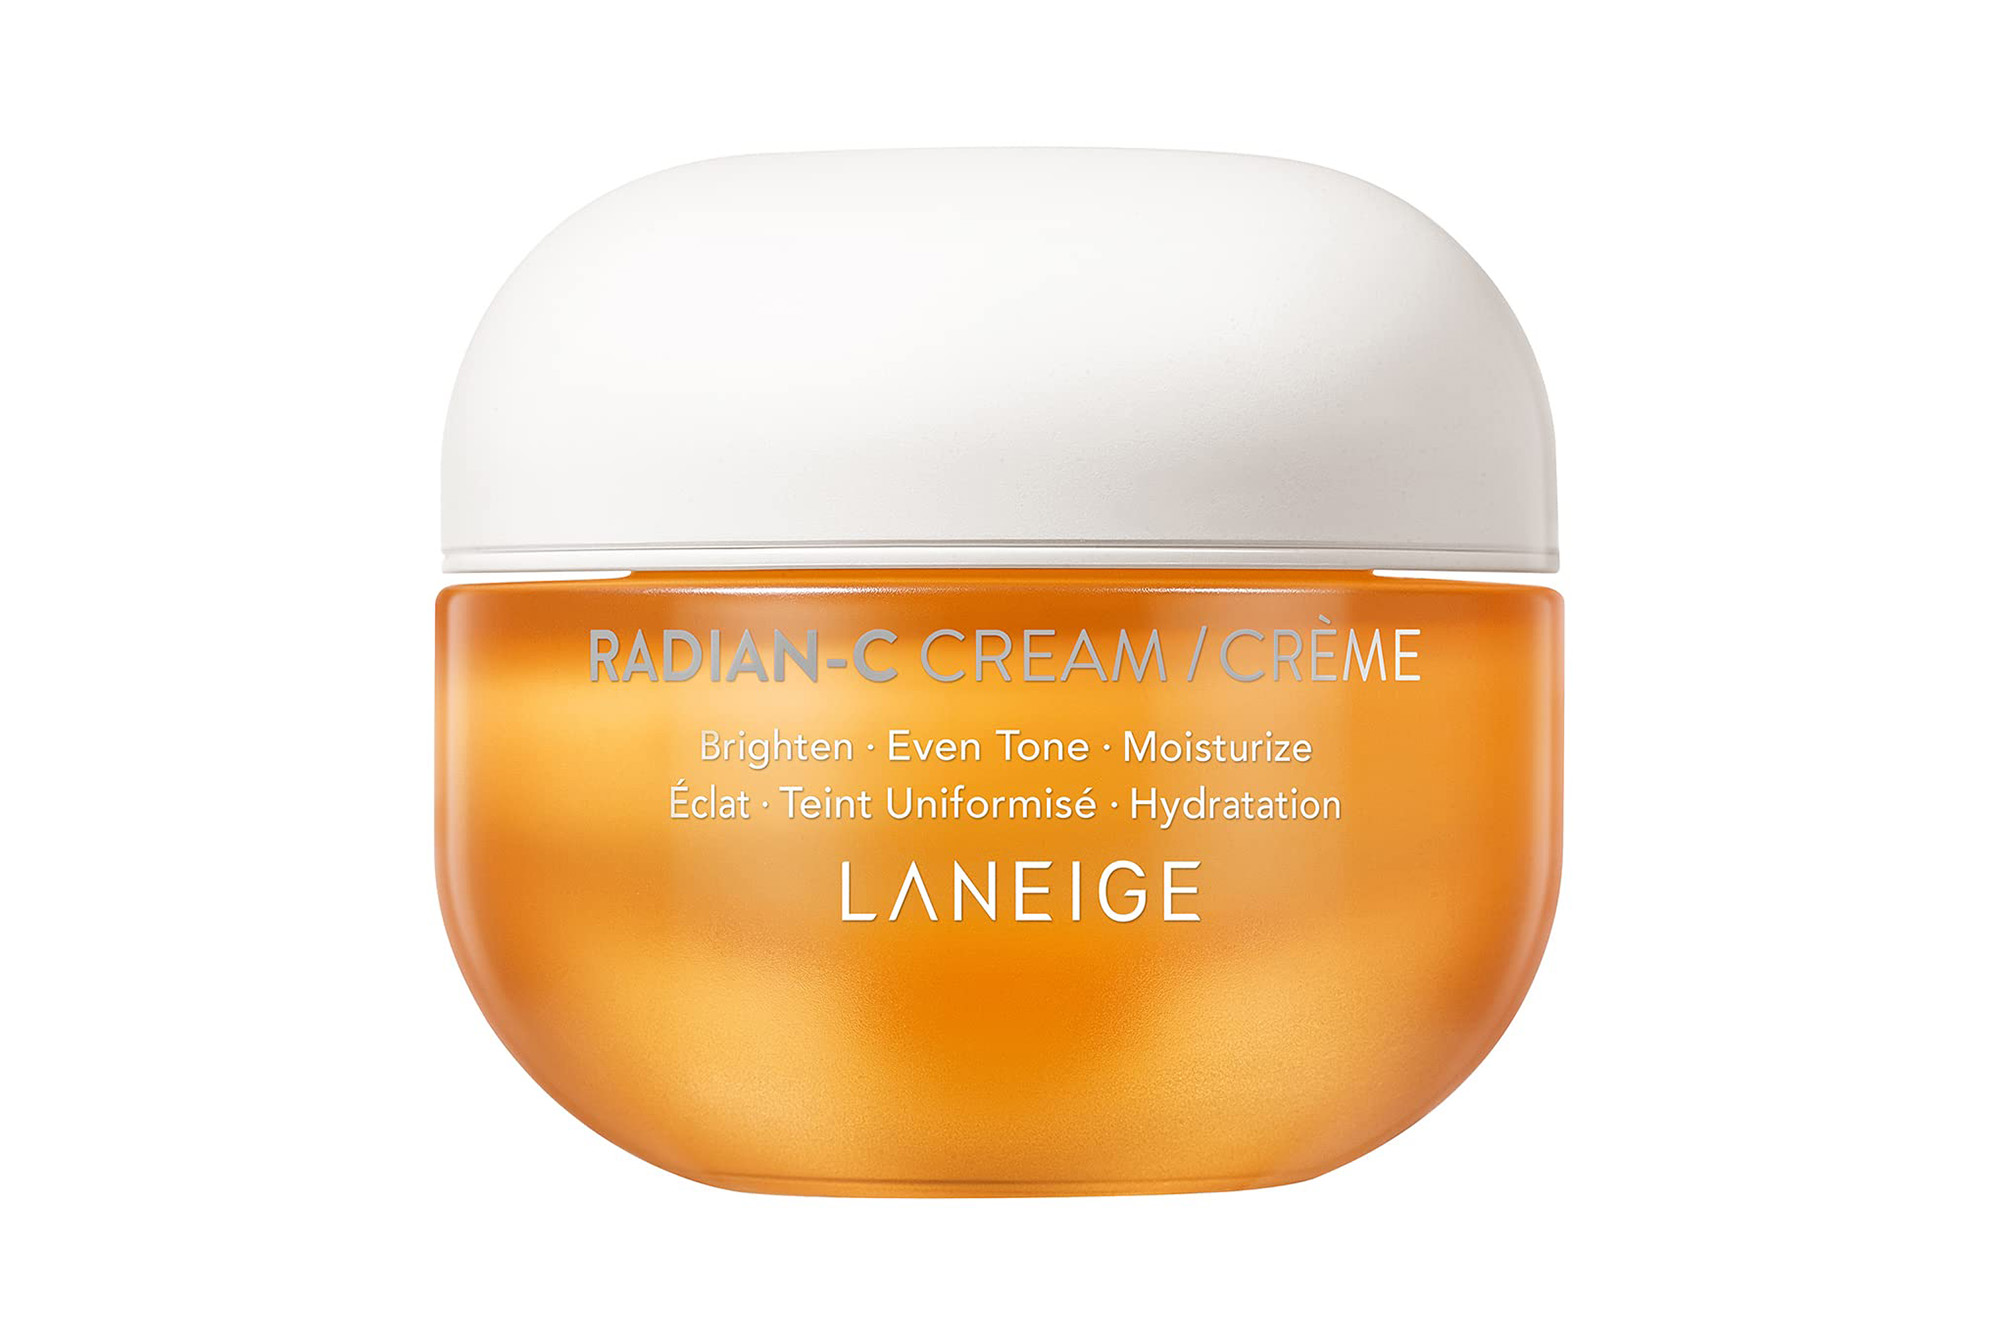 An orange container of Laneige skincare cream